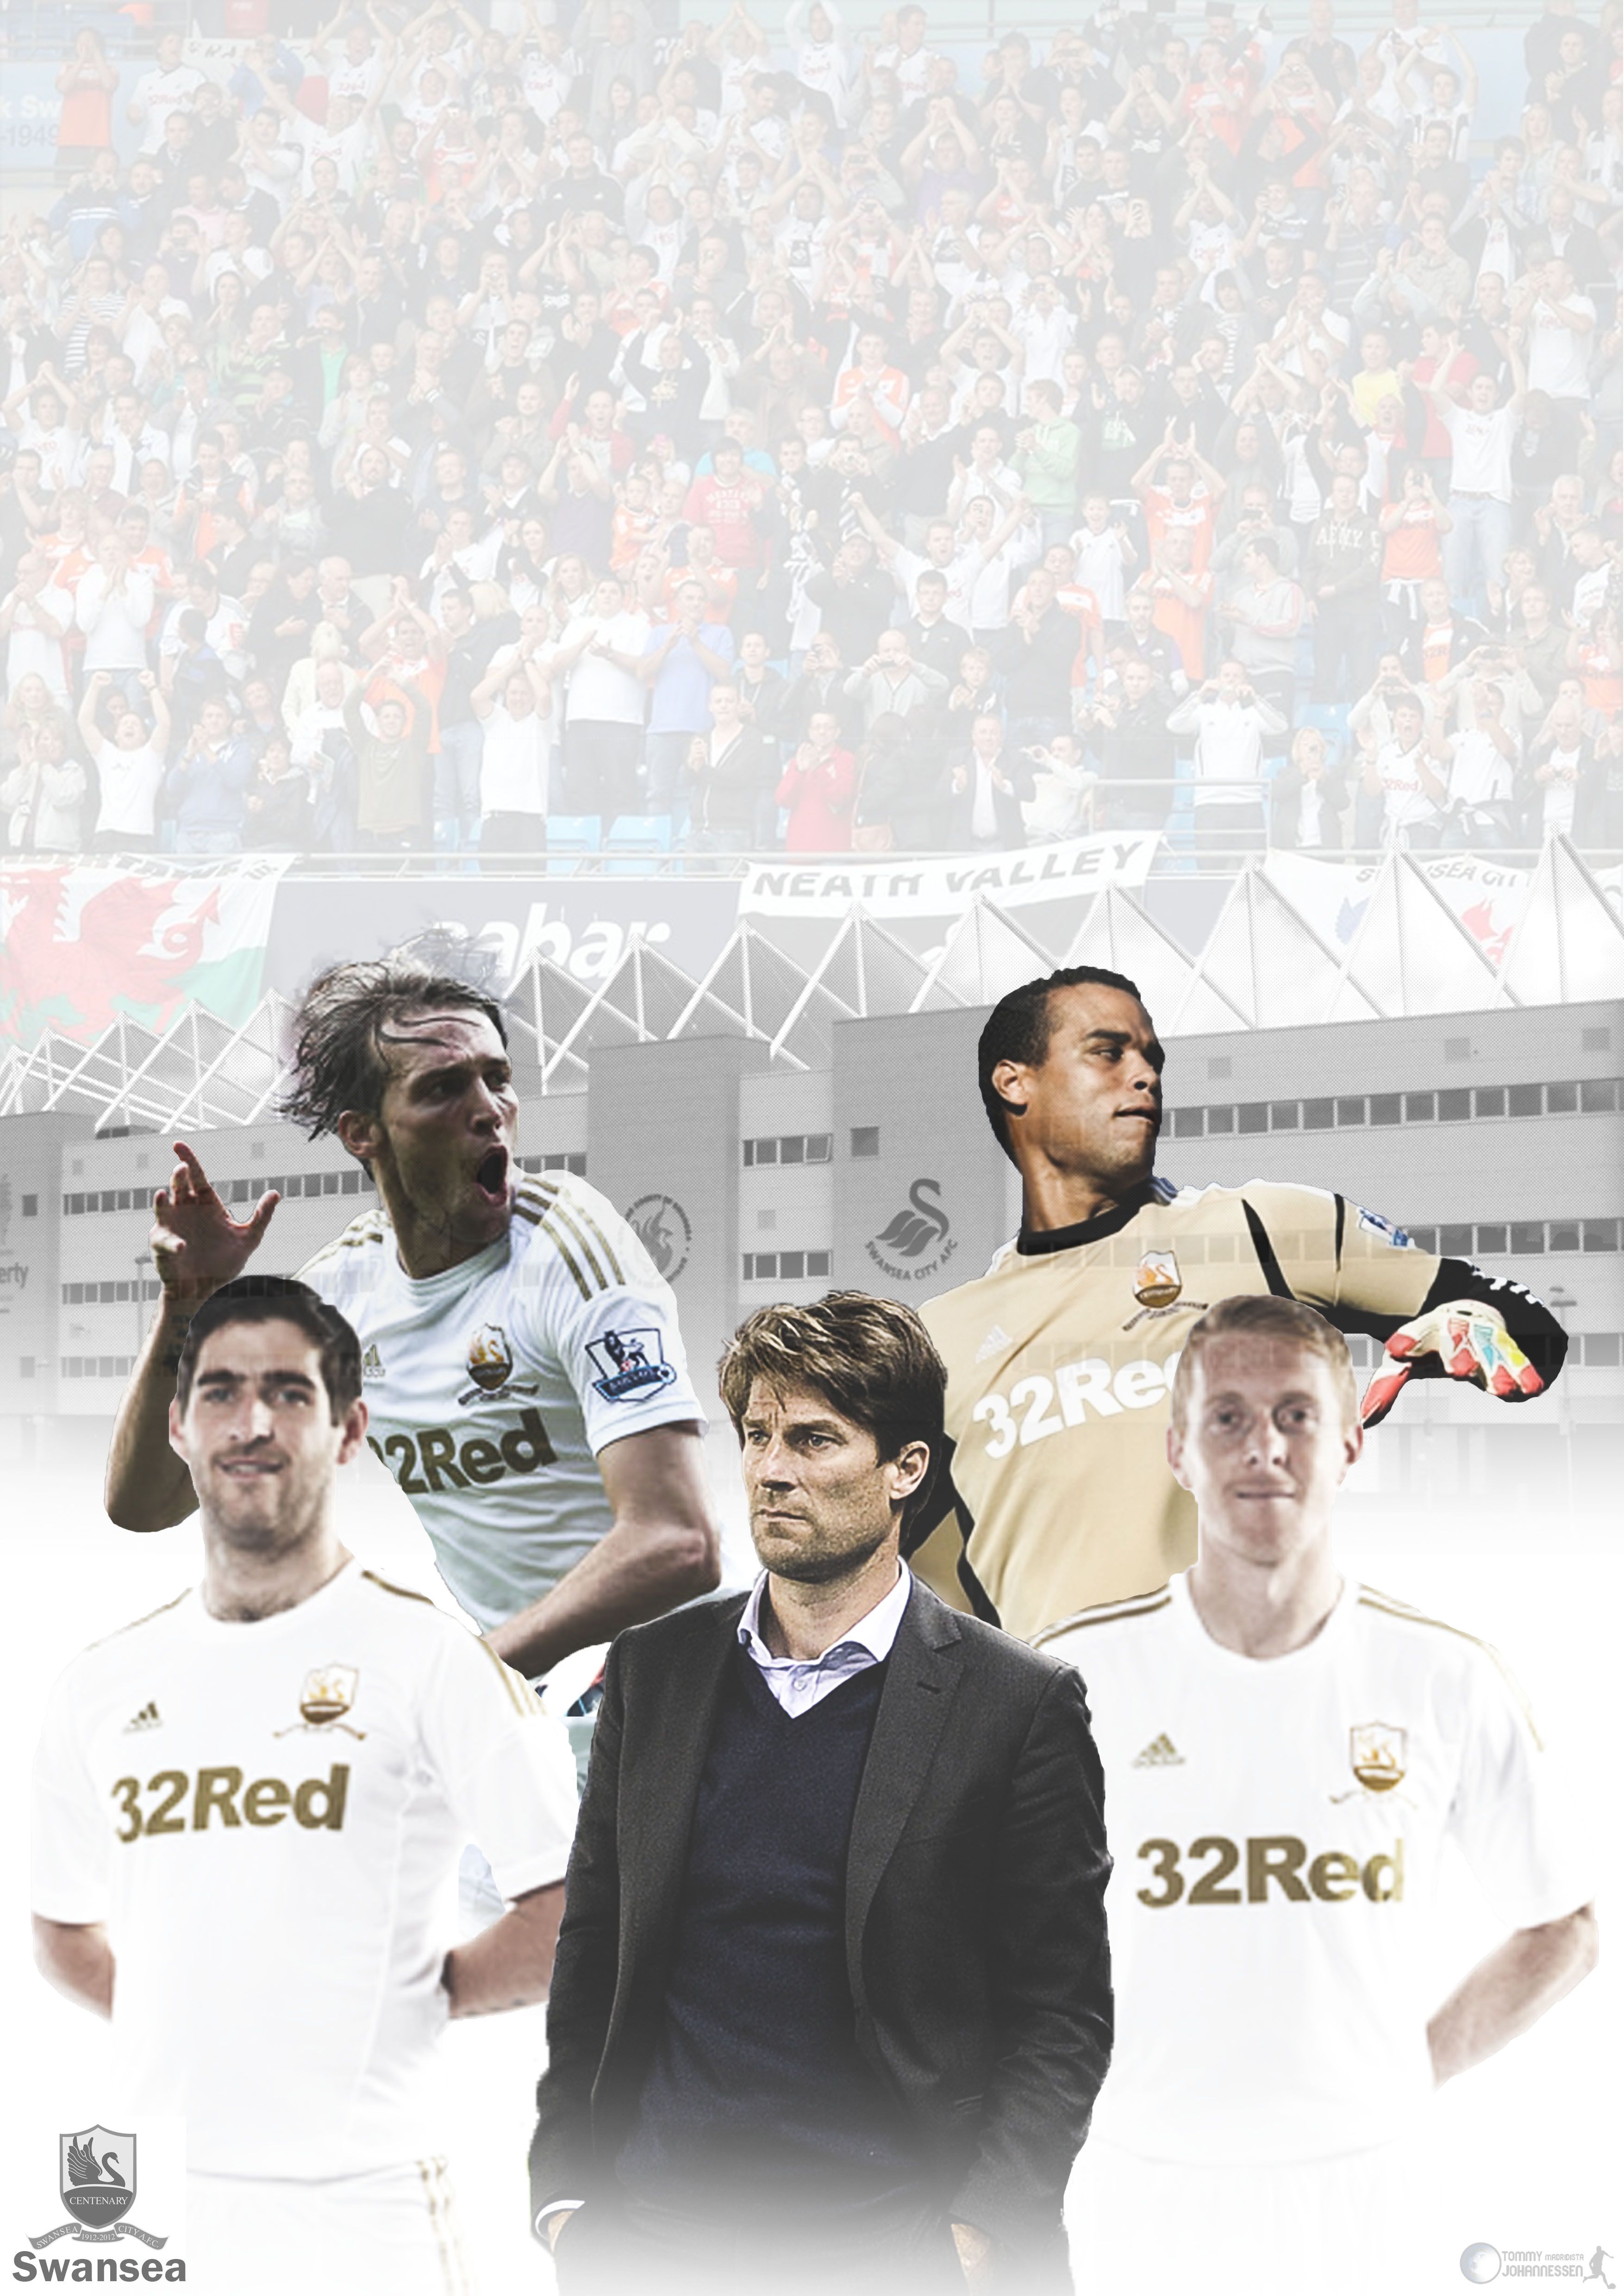 Swansea. HD Football Wallpaper